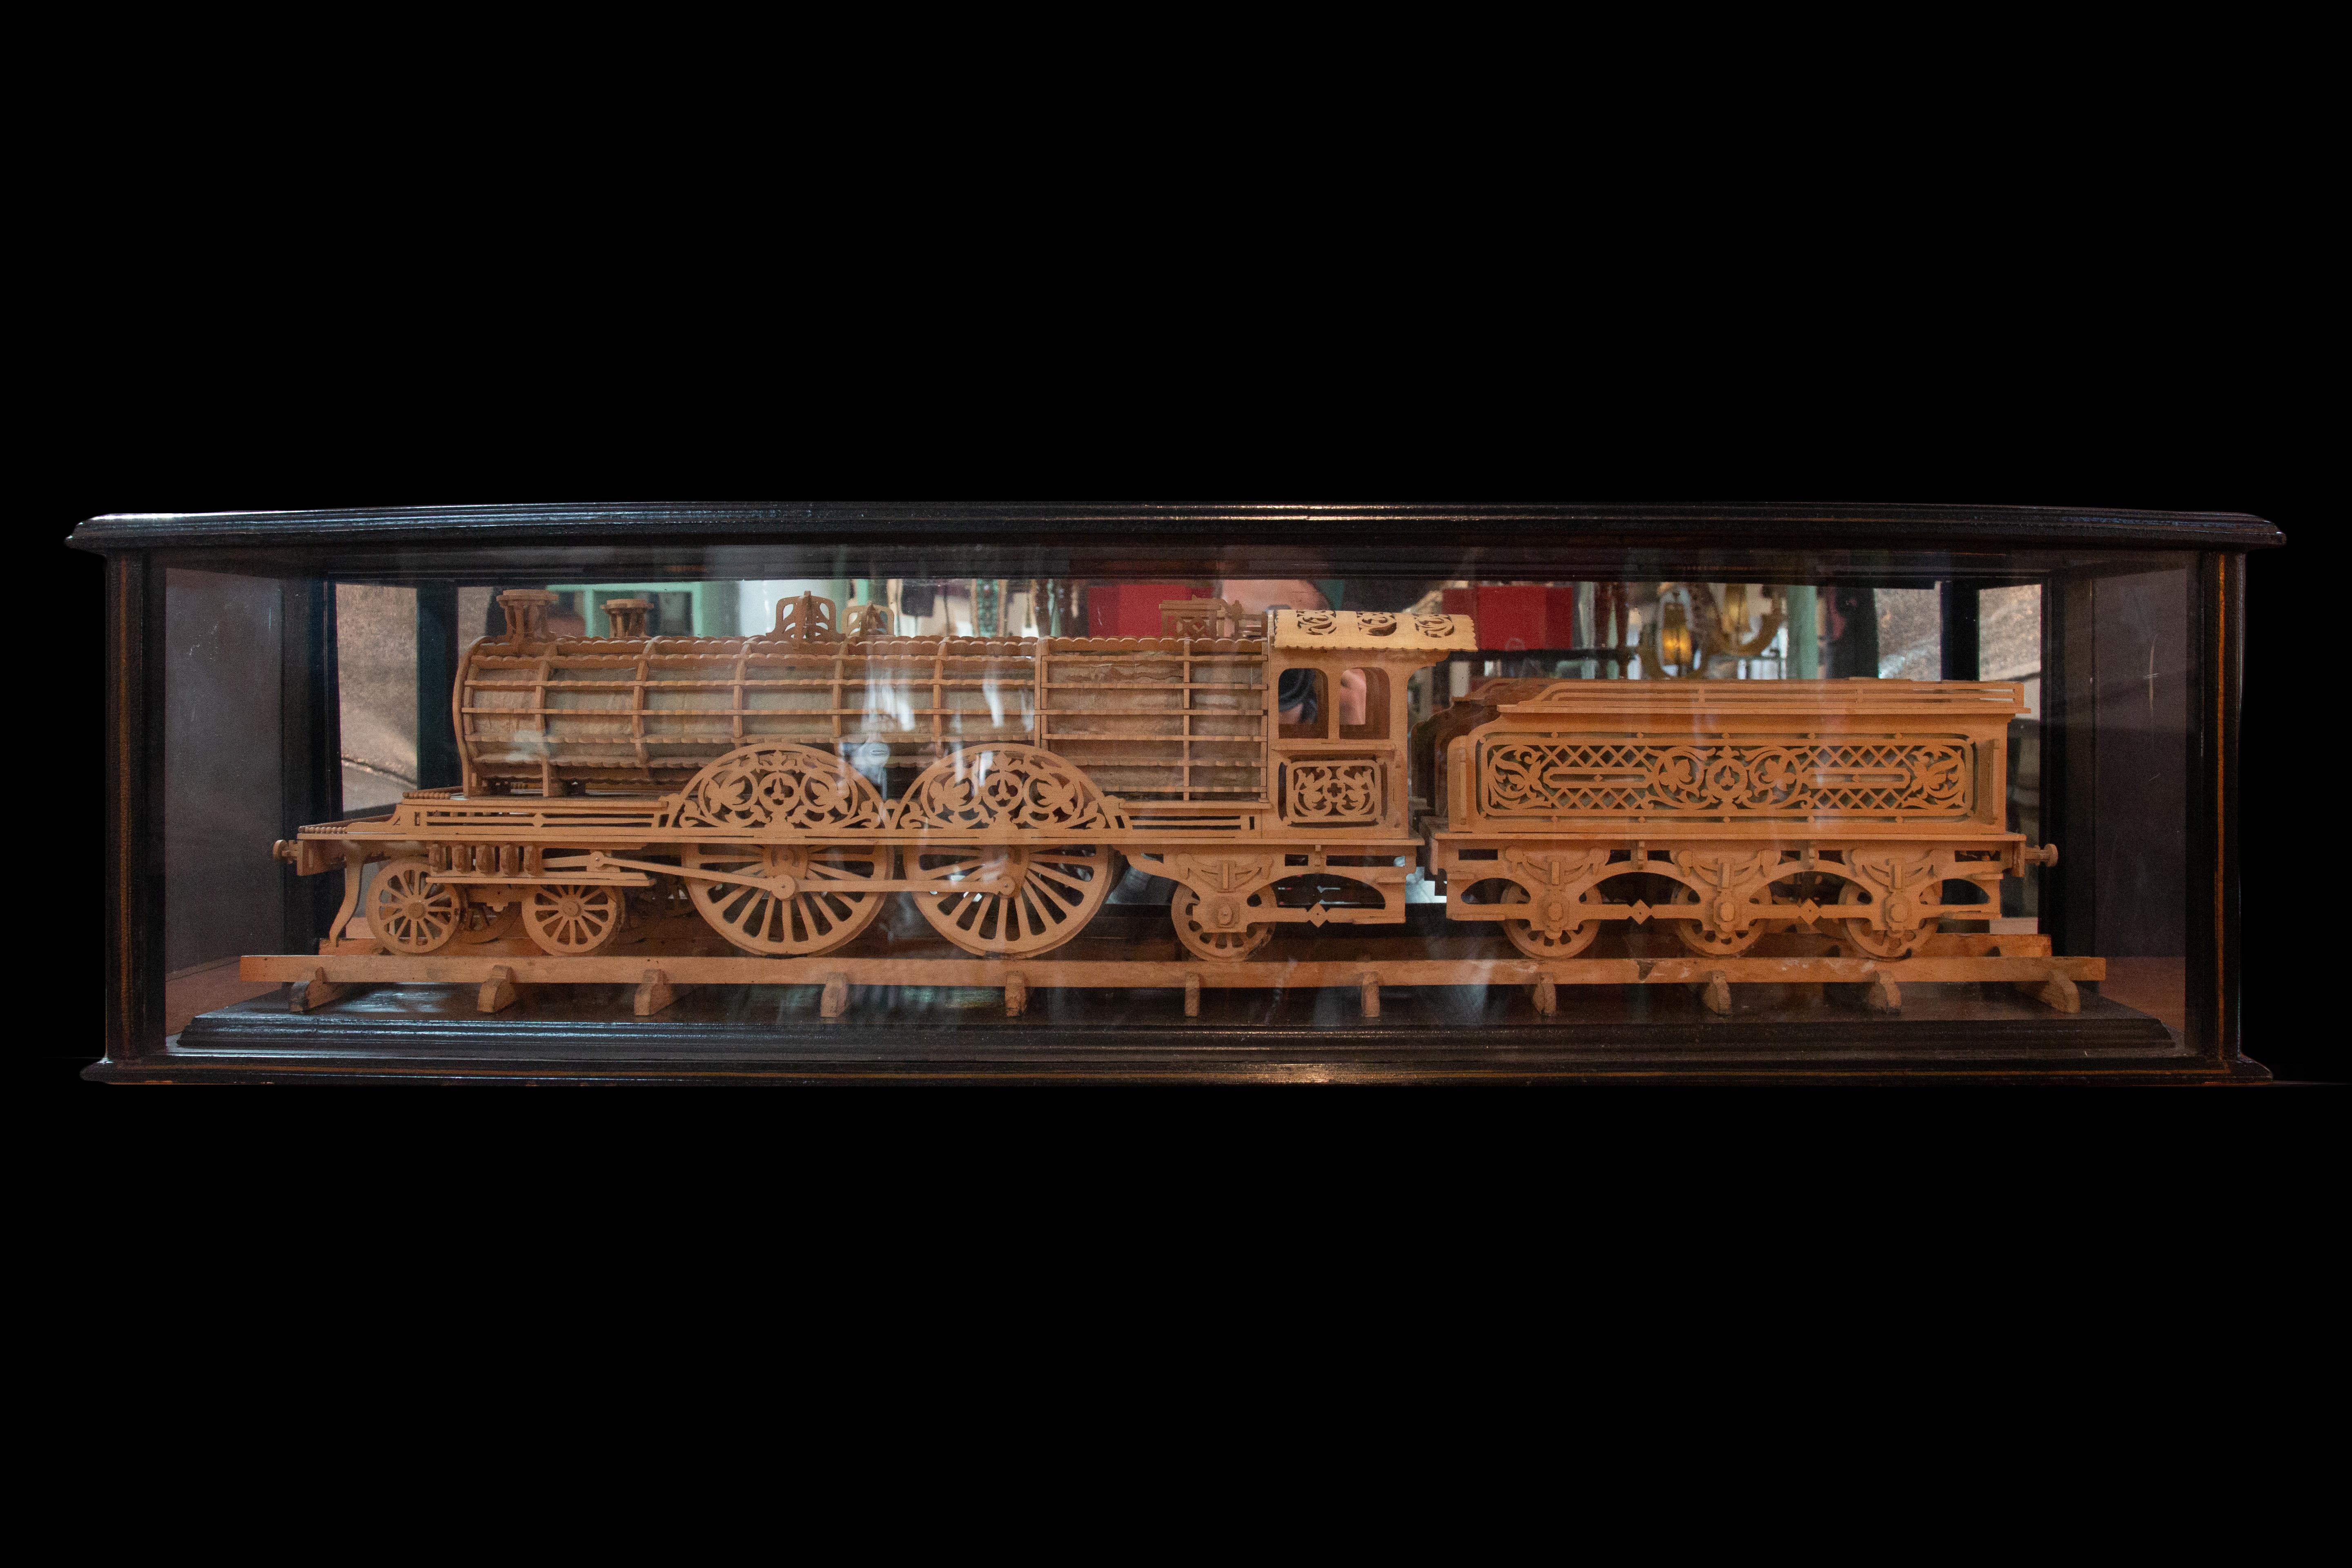 Modèle en bois sculpté d'une locomotive présenté dans un coffret en bois verni et peint. Cette pièce de facture complexe capture l'essence d'une locomotive avec un souci du détail stupéfiant. Le modèle mesure une longueur impressionnante de 42 1/2